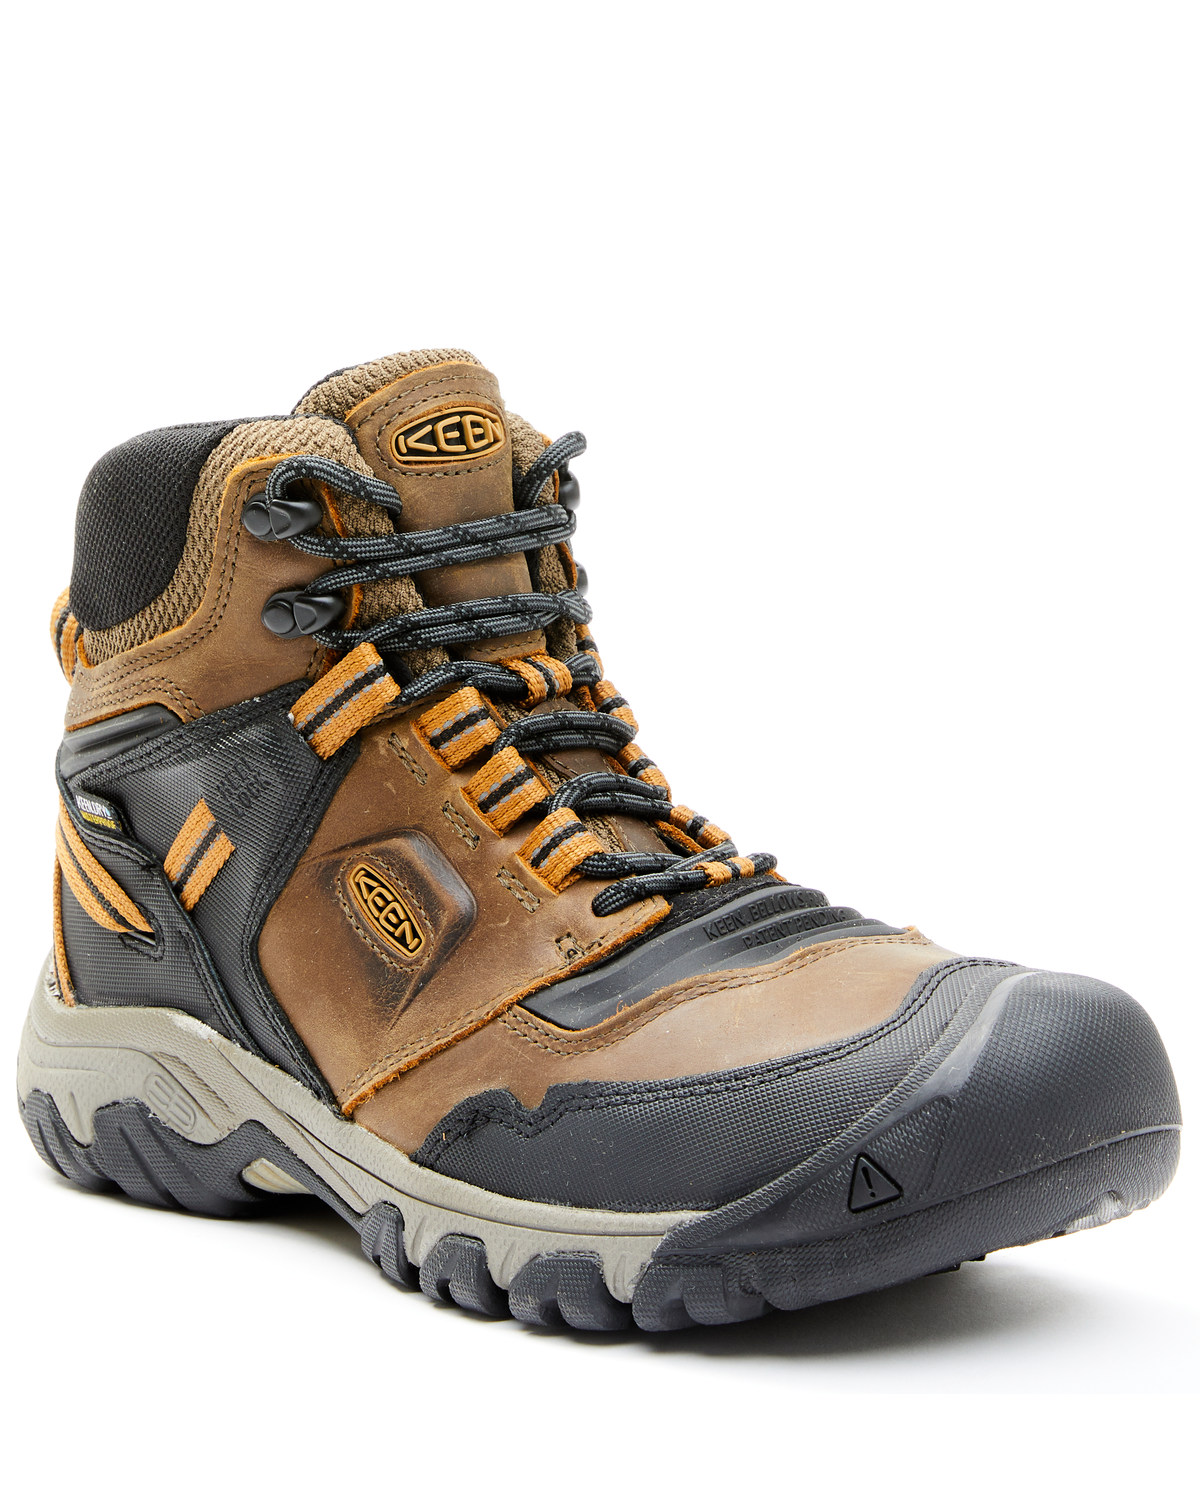 Keen Men's Ridge Flex Waterproof Hiking Boots